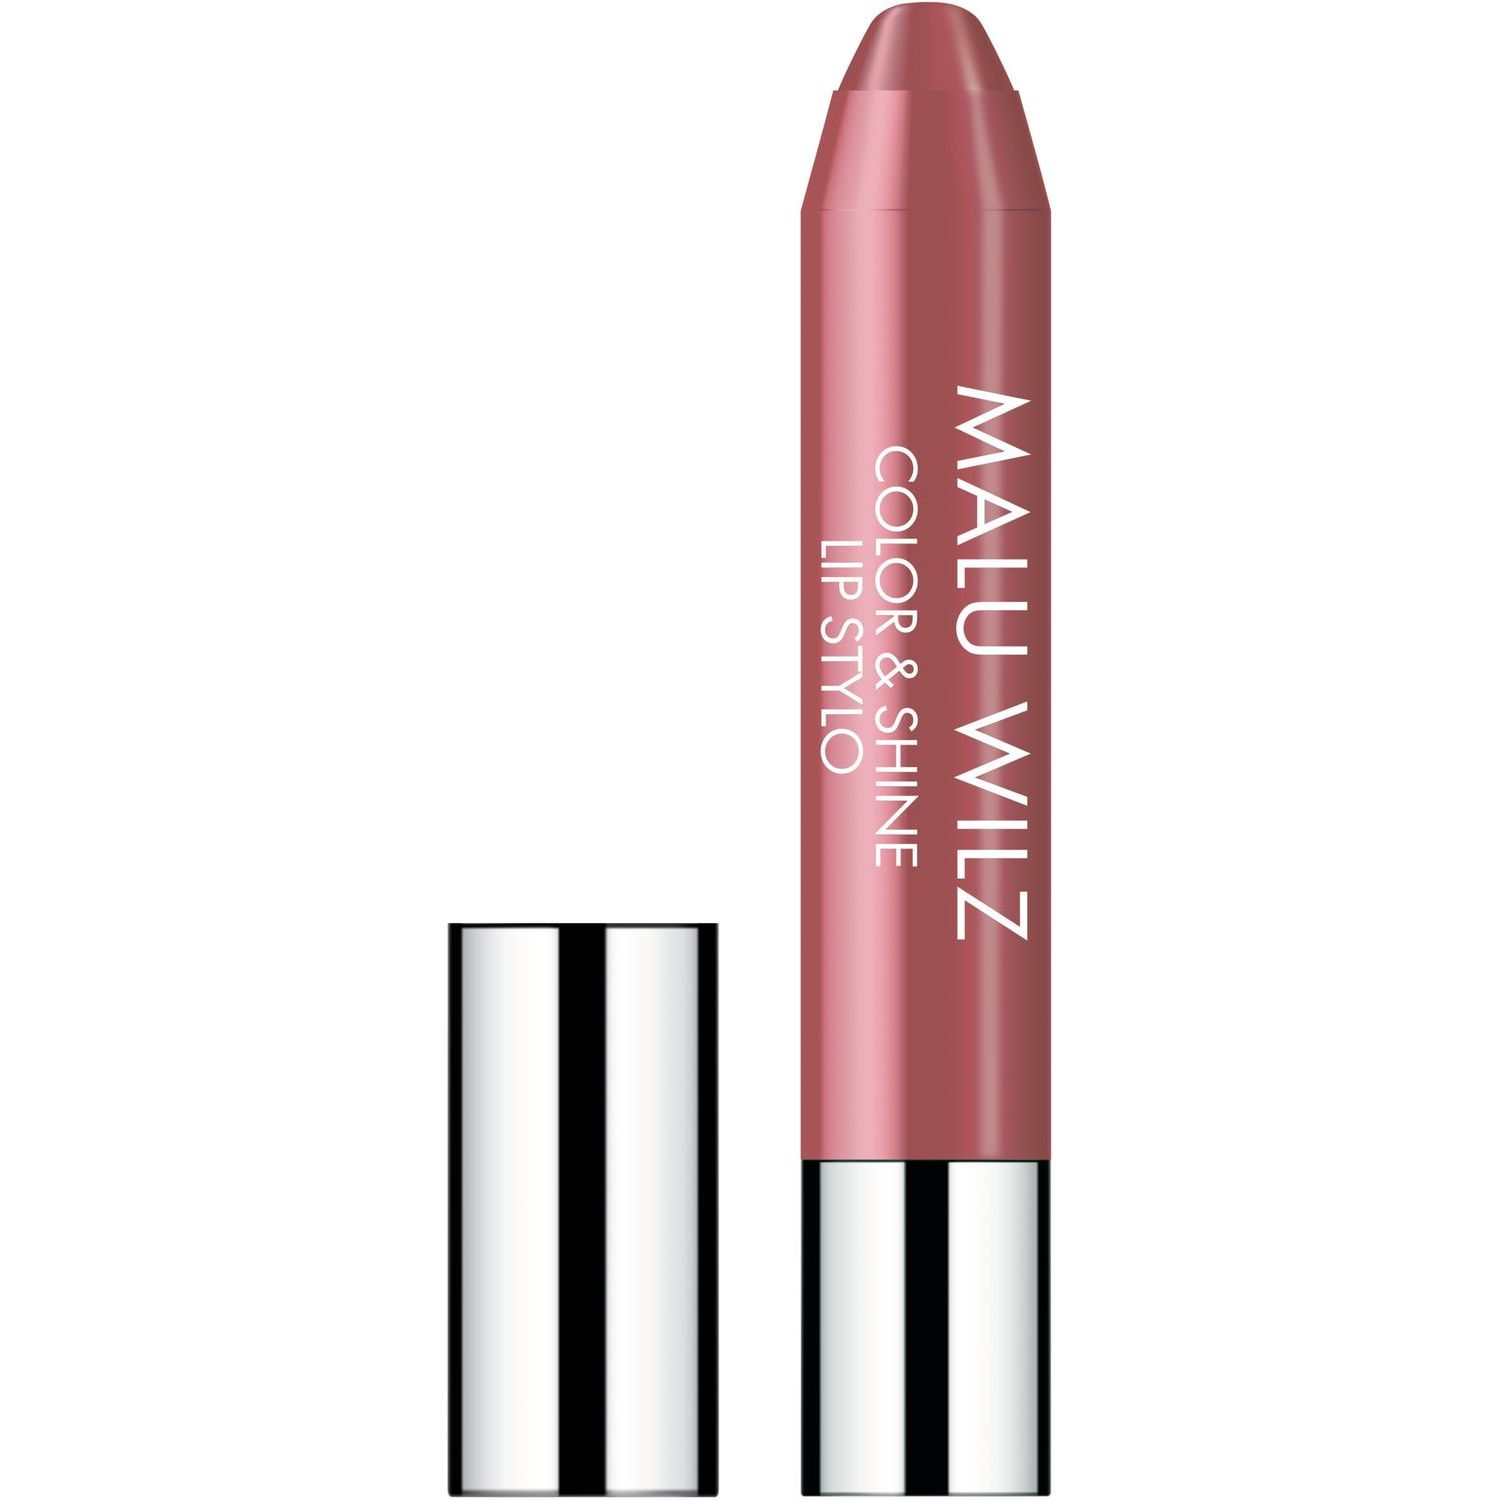 Зволожуюча губнапомада, Malu Wilz Color&Shine Lip Stylo, відтінок 40 (рожево-коричневий), 11 г - фото 1